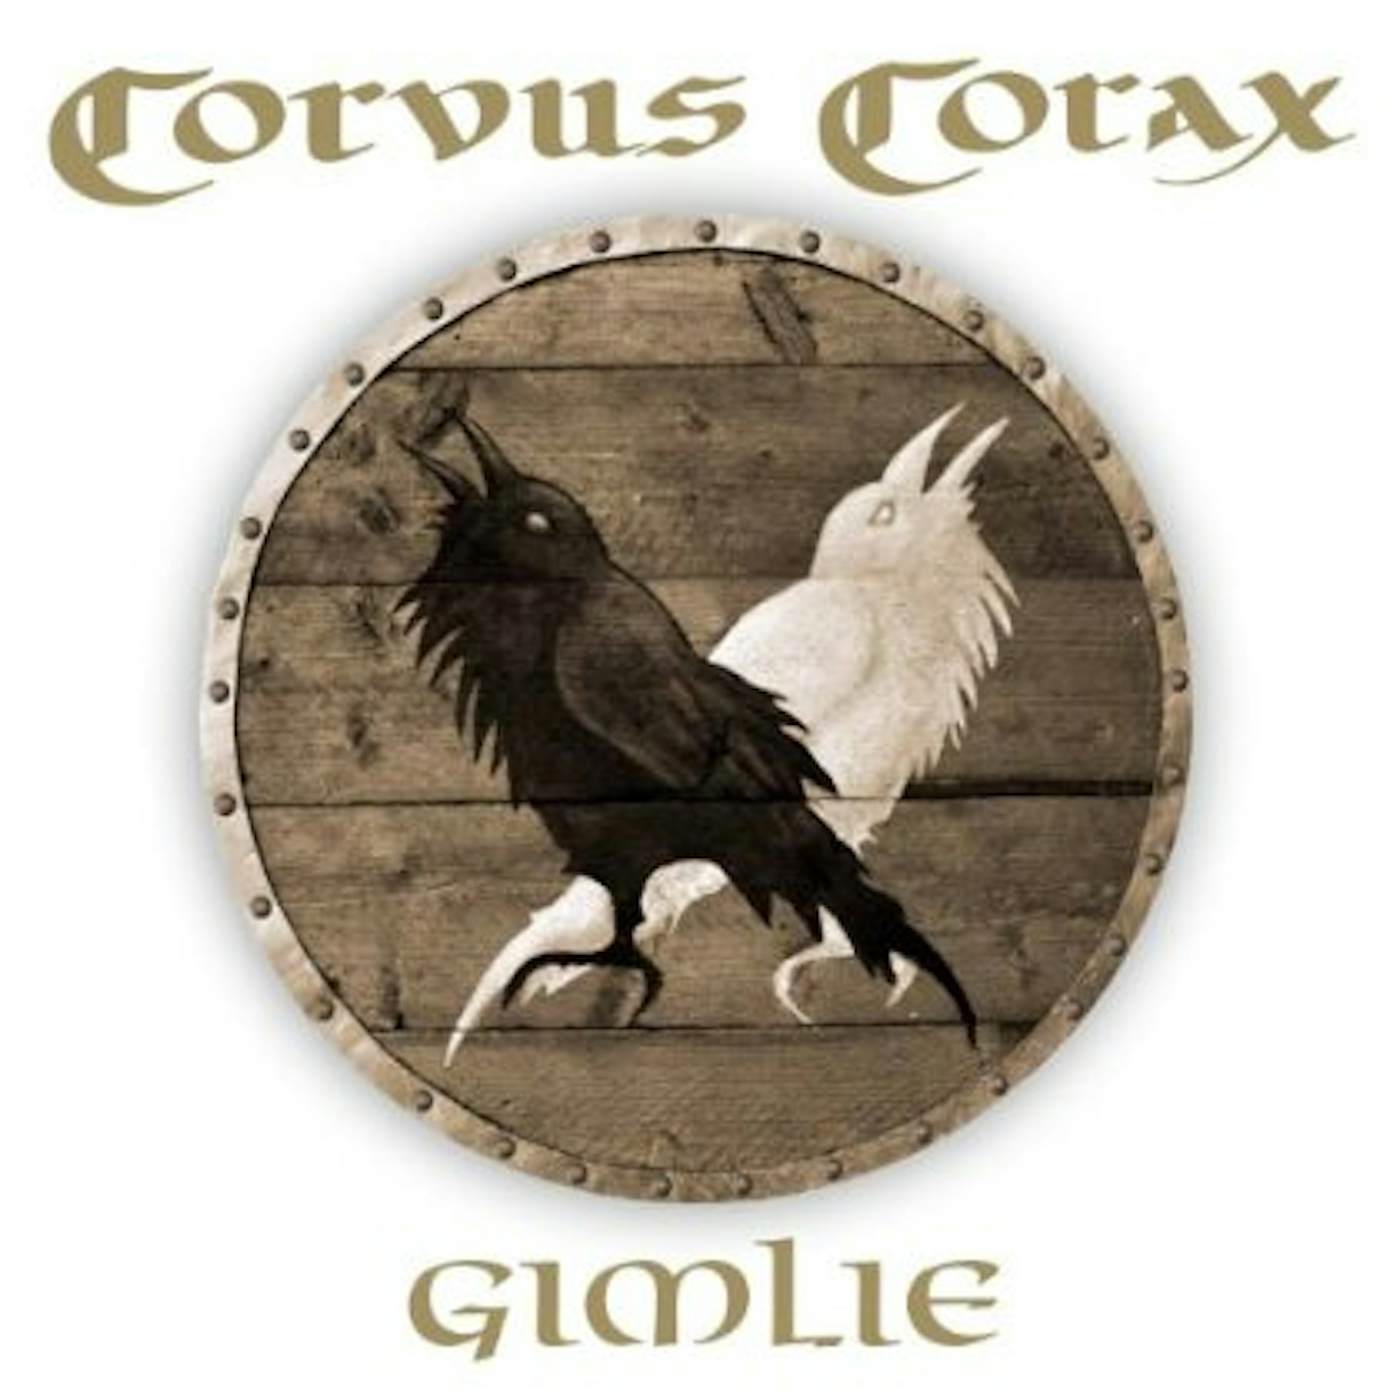 Corvus Corax - Era Metallum - New album in Triple Gatefοld Vinyl